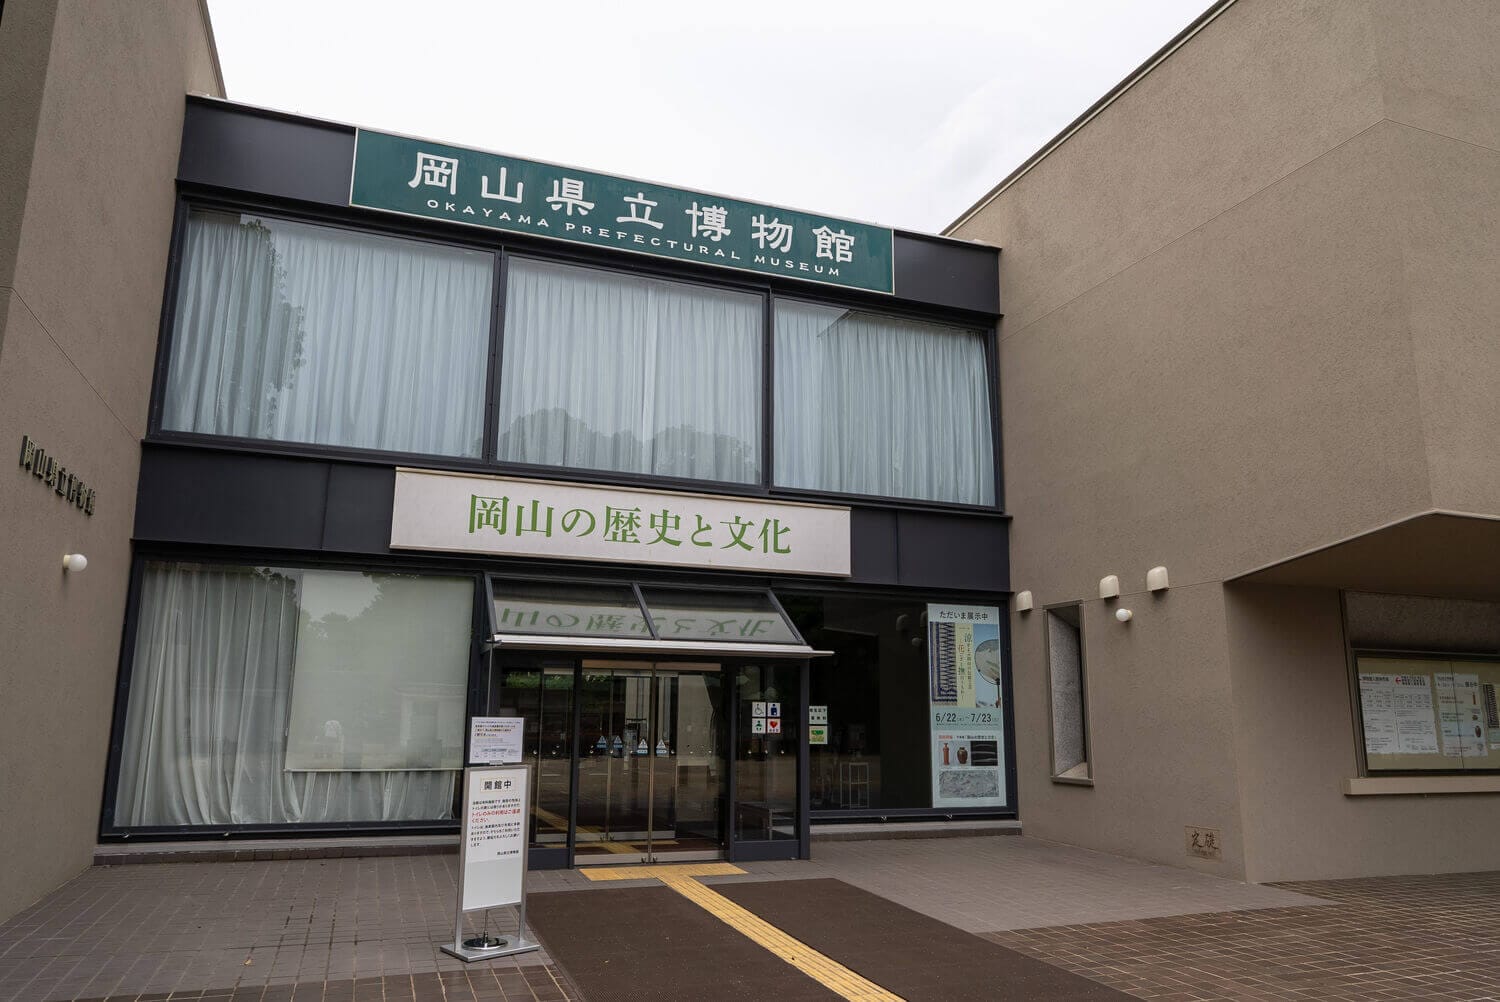 岡山の歴史と文化遺産が集まる場所、岡山県立博物館で文化体験の画像